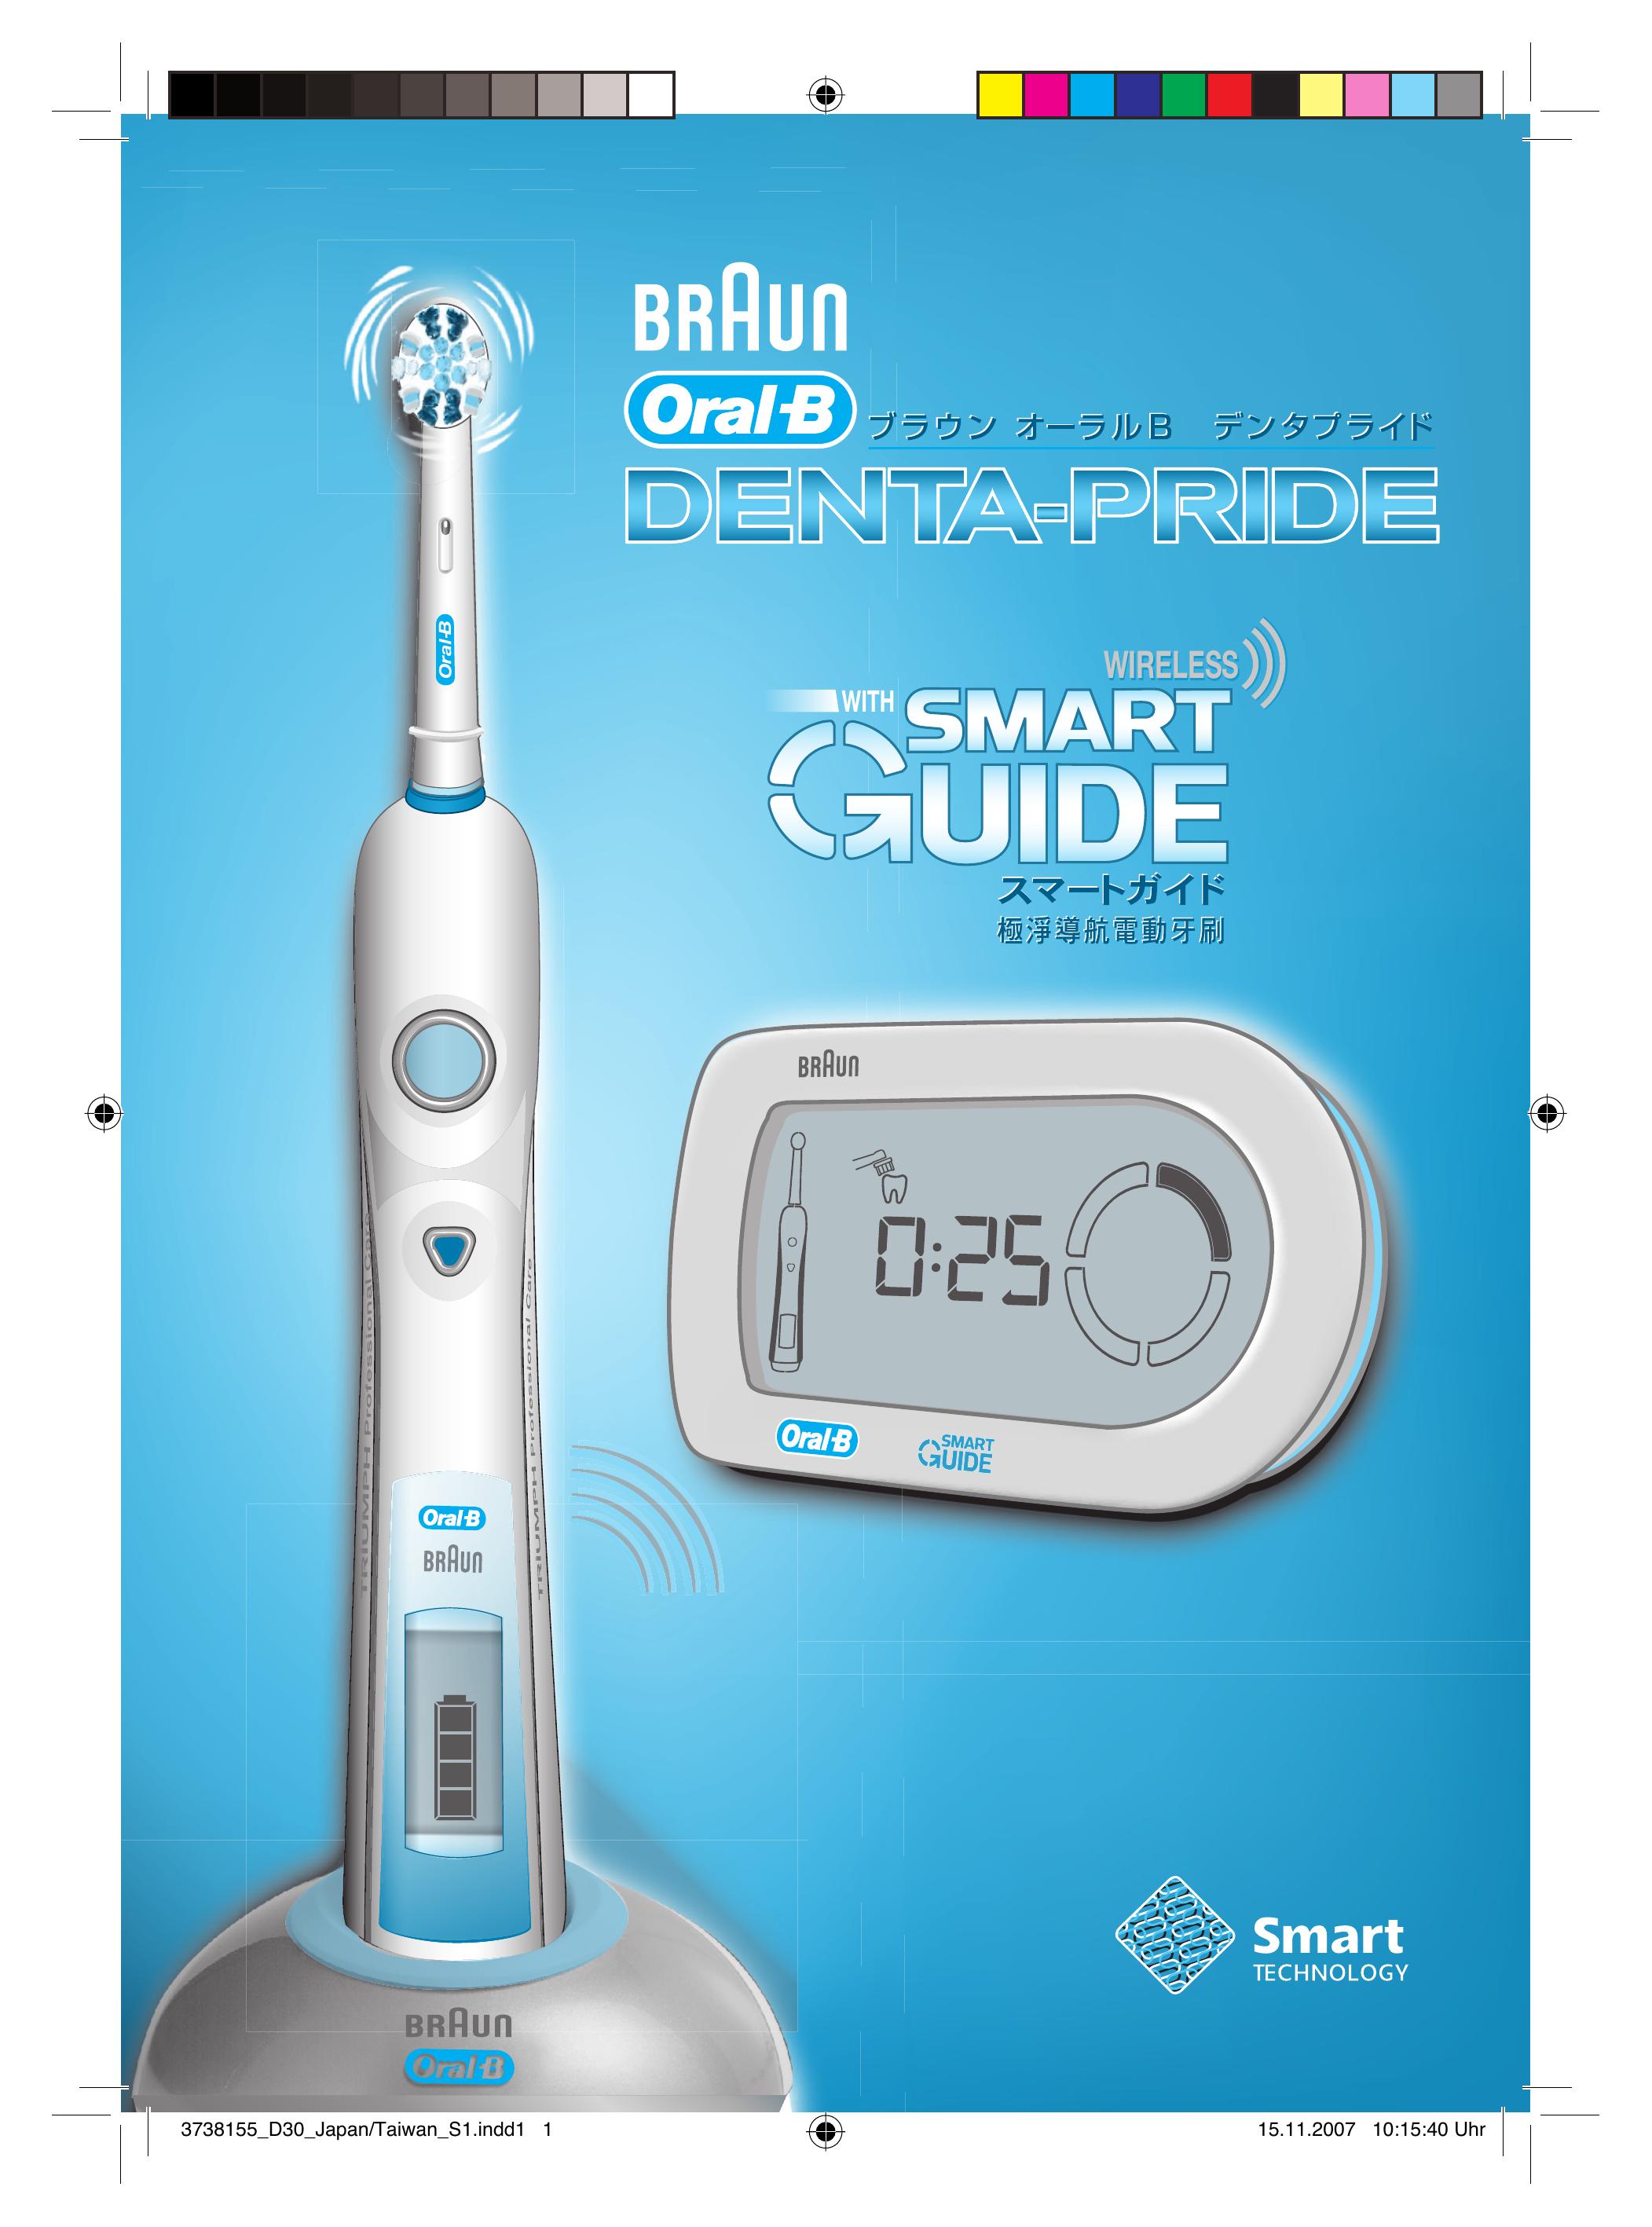 Braun 3731 Electric Toothbrush User Manual